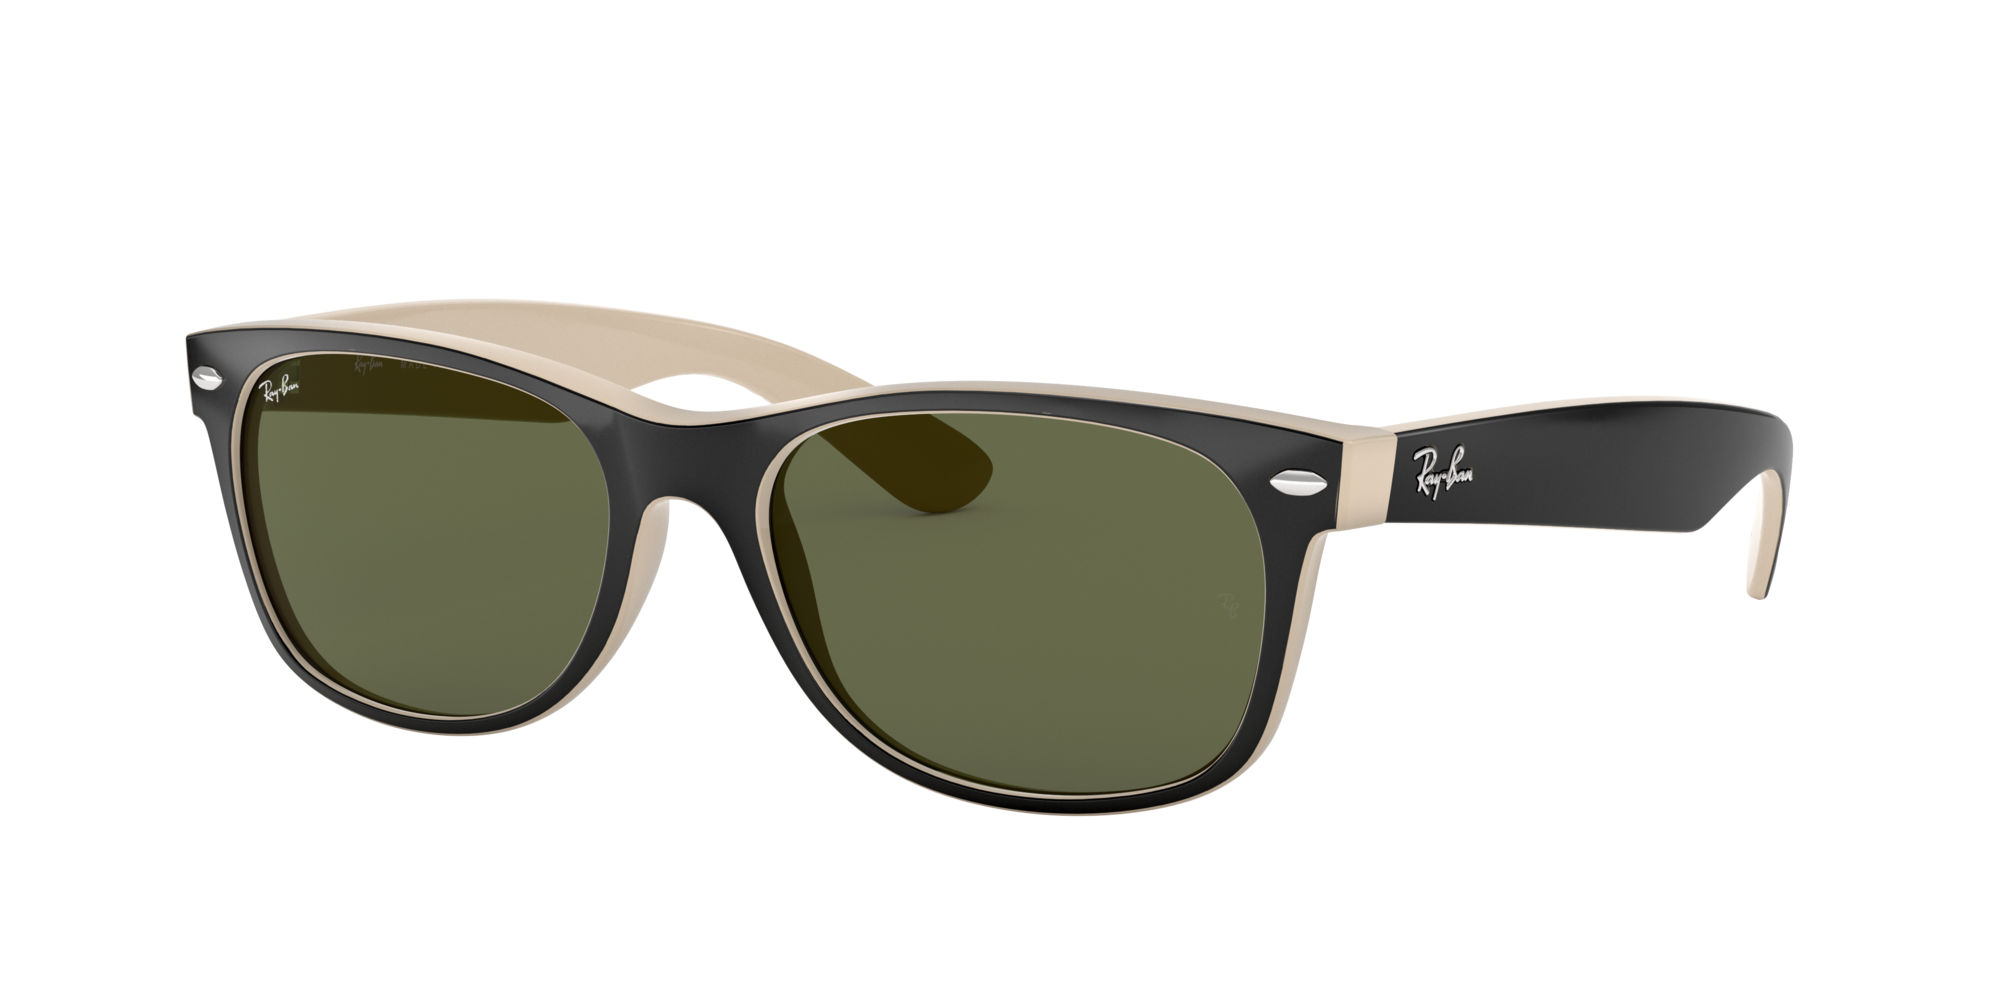 new wayfarer style sunglasses